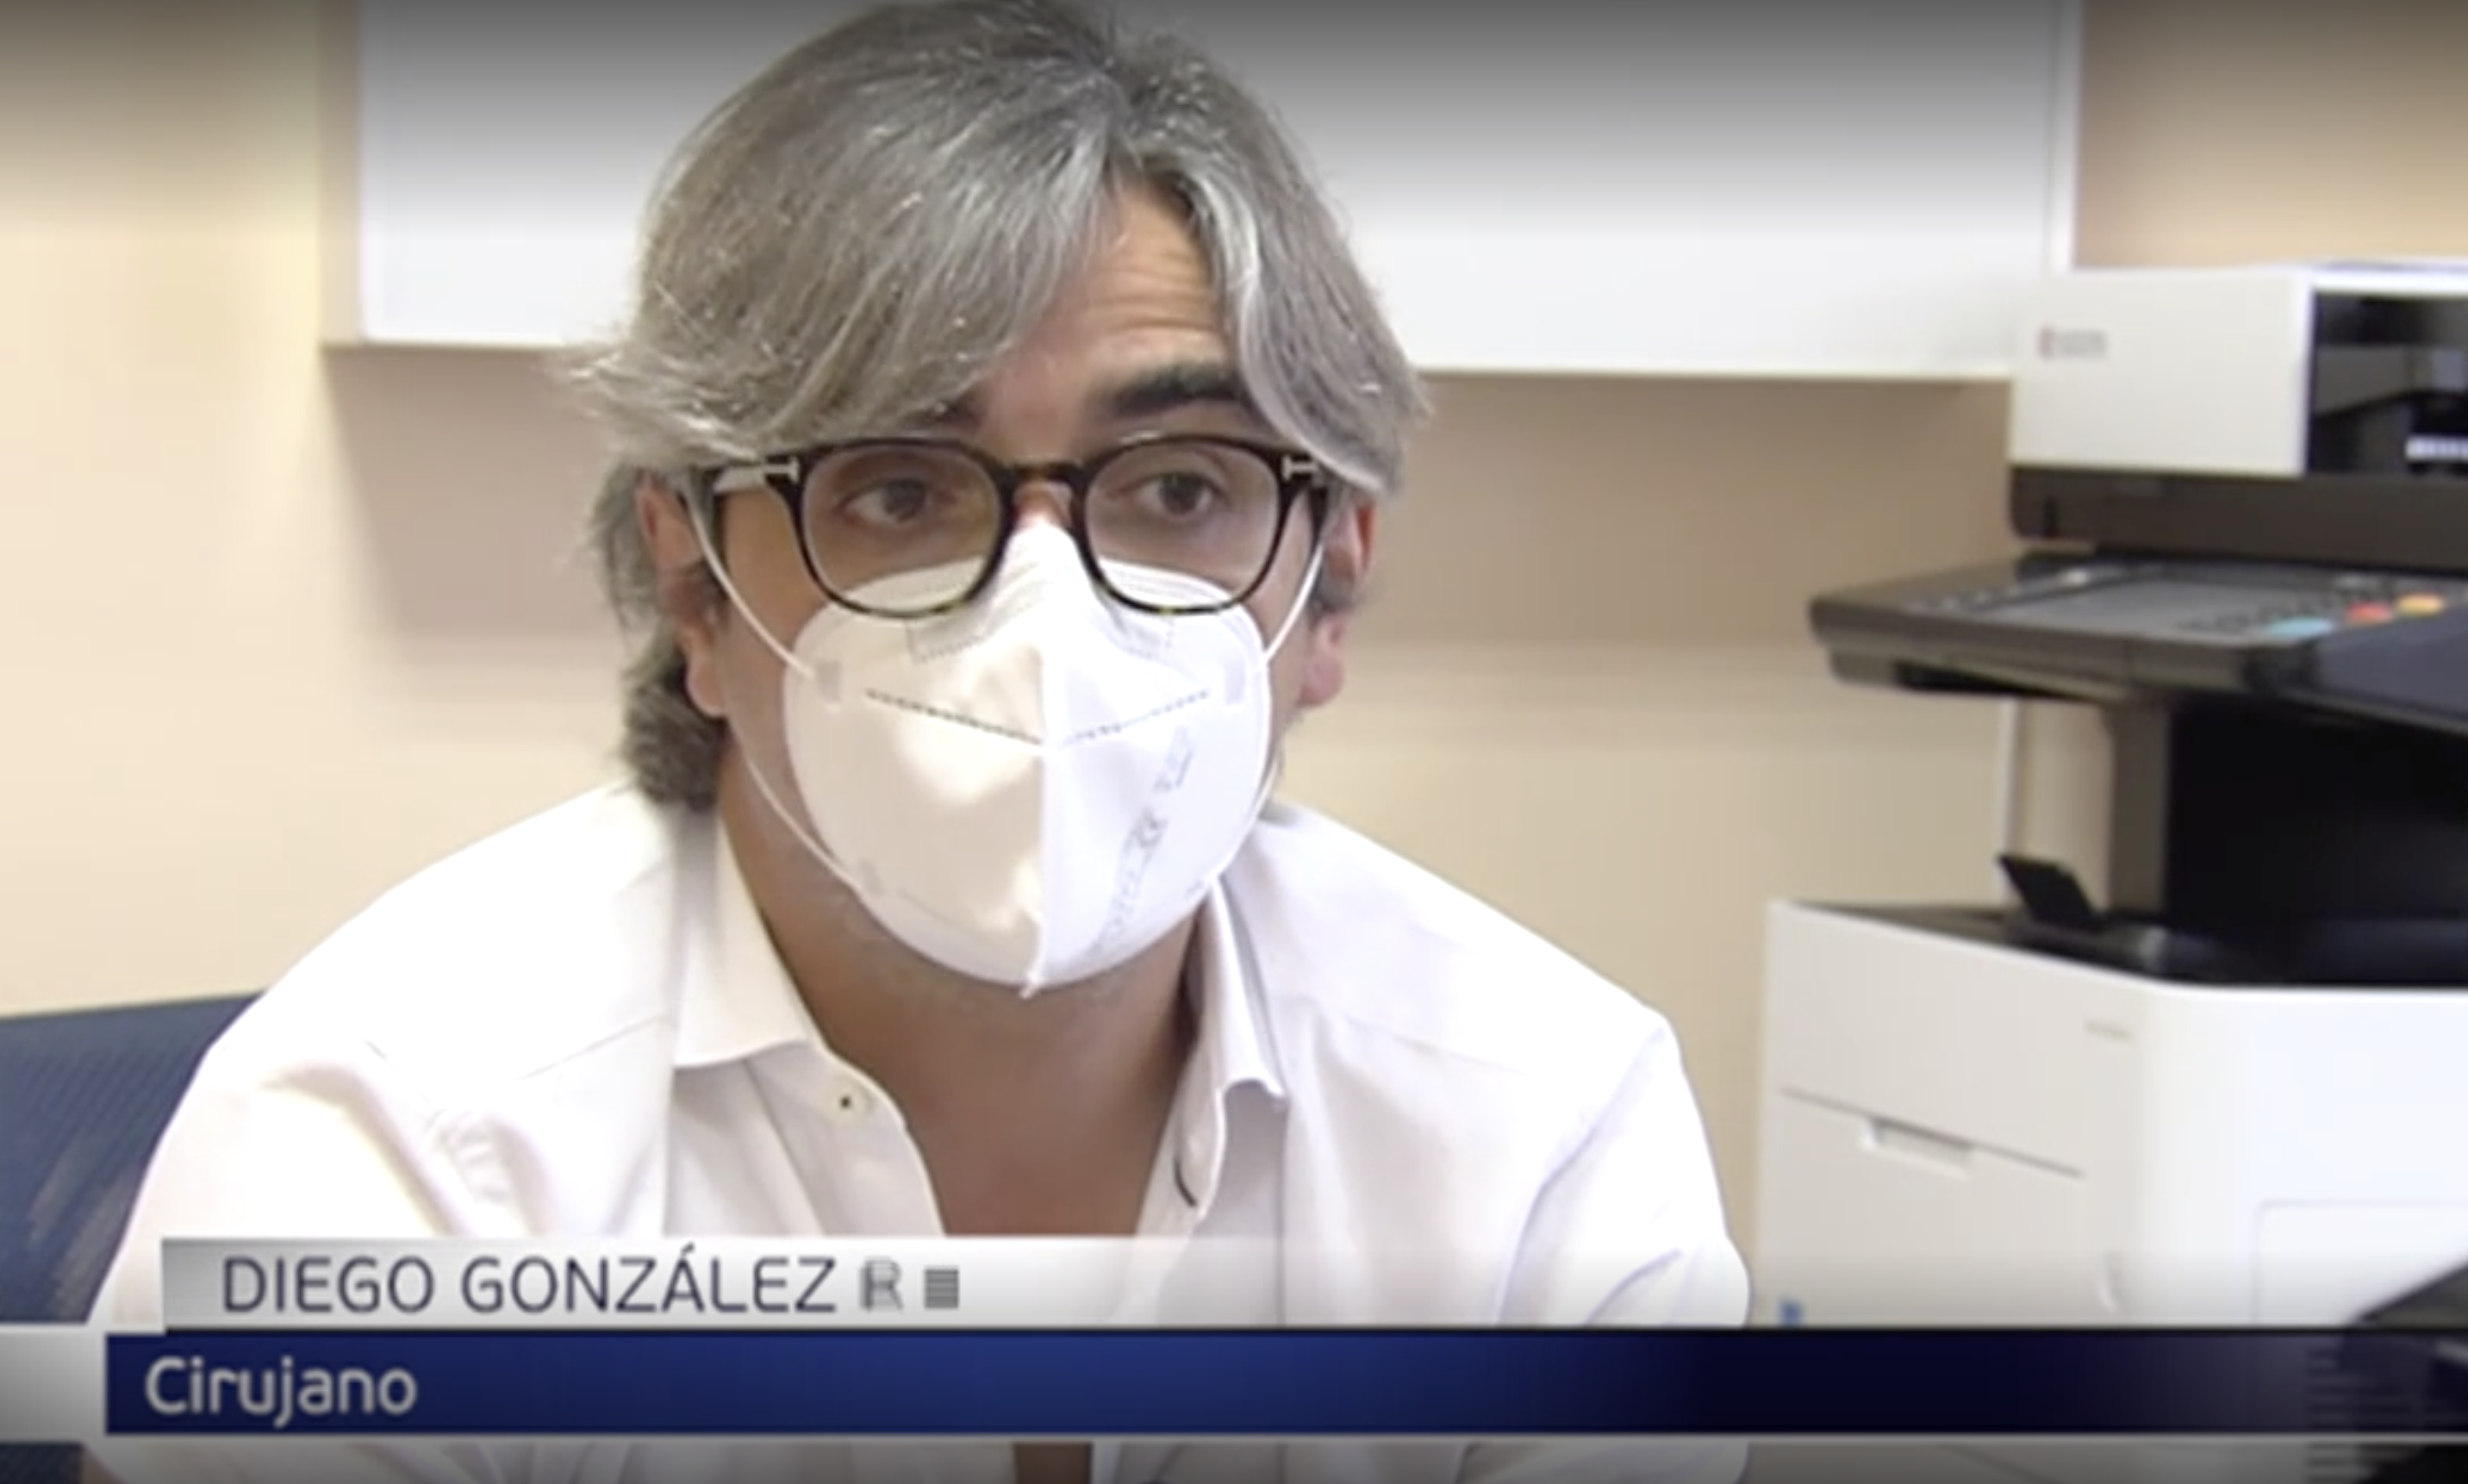 Diego González Rivas, el "Phileas Fogg" de la medicina: "no hablaría de salvar vidas, sino de ayudar a gente " (TELE 5)